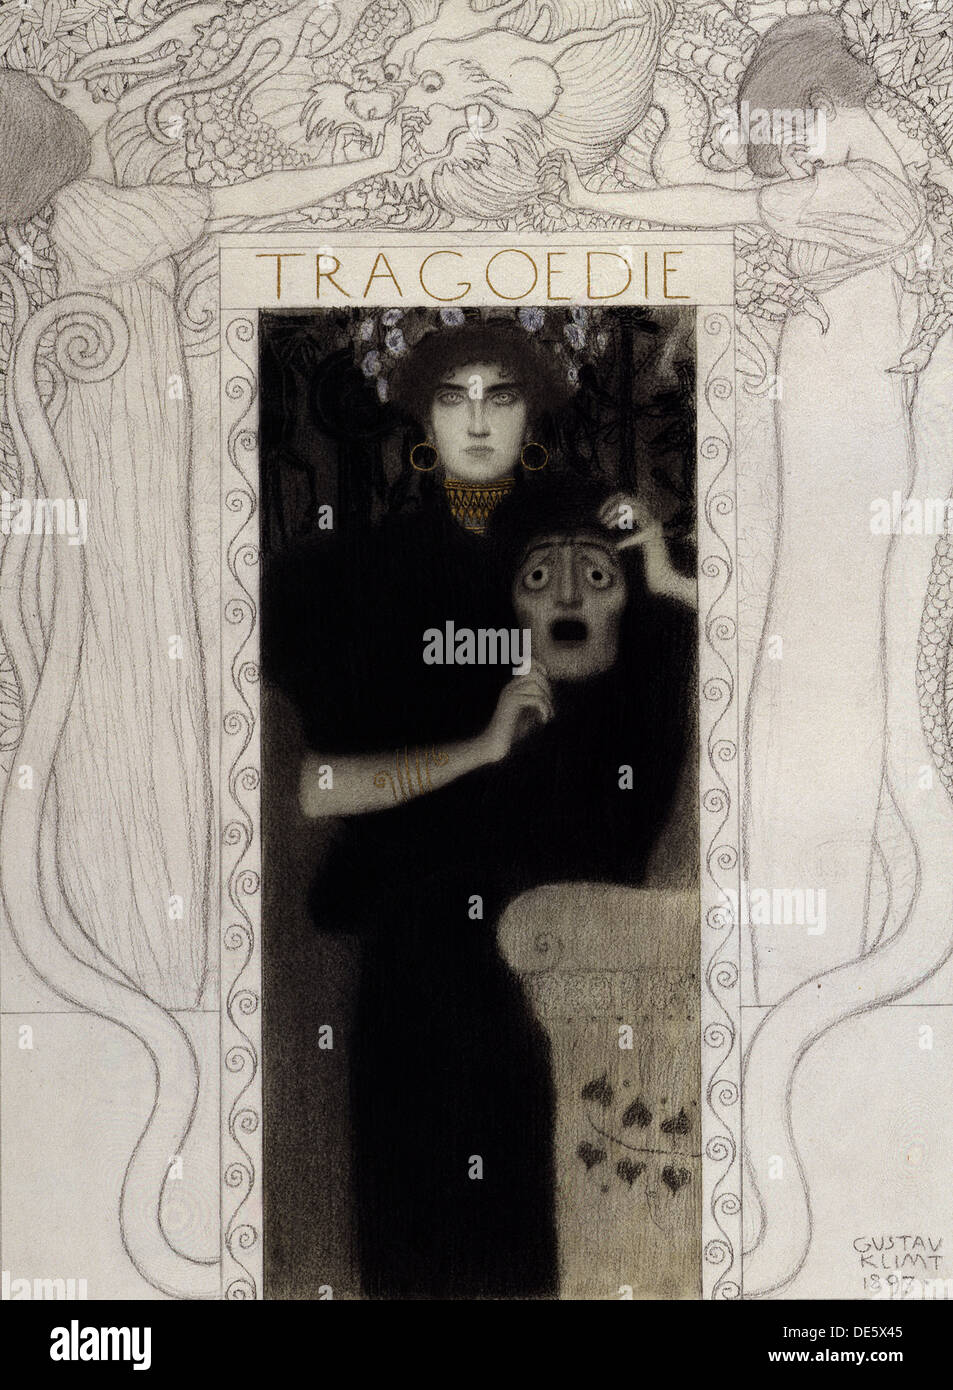 Tragedia, 1897. Artista: Klimt, Gustav (1862-1918) Foto Stock